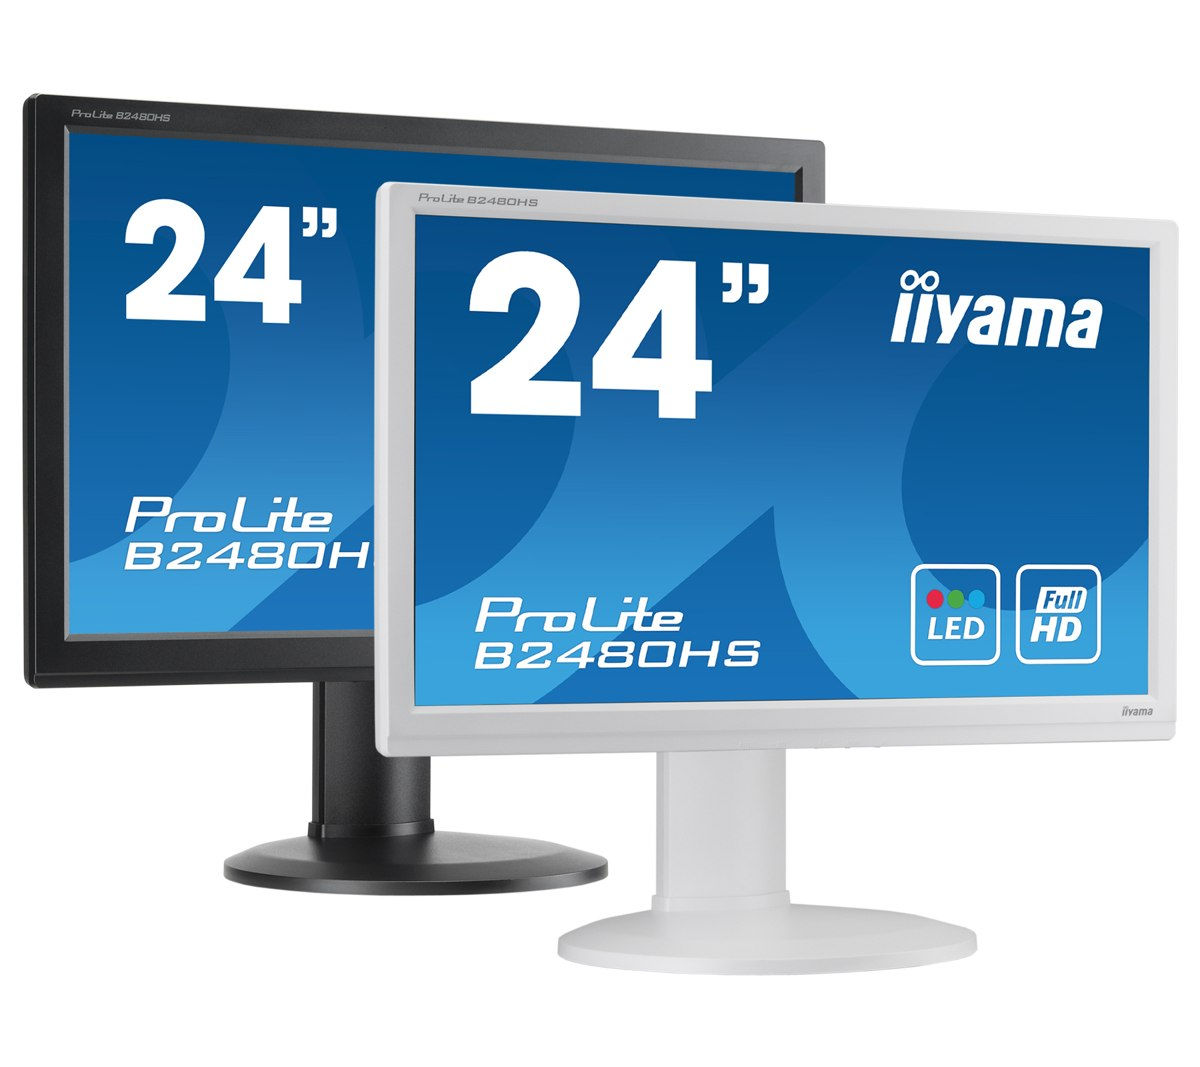 iiyama: monitory do domu i biura